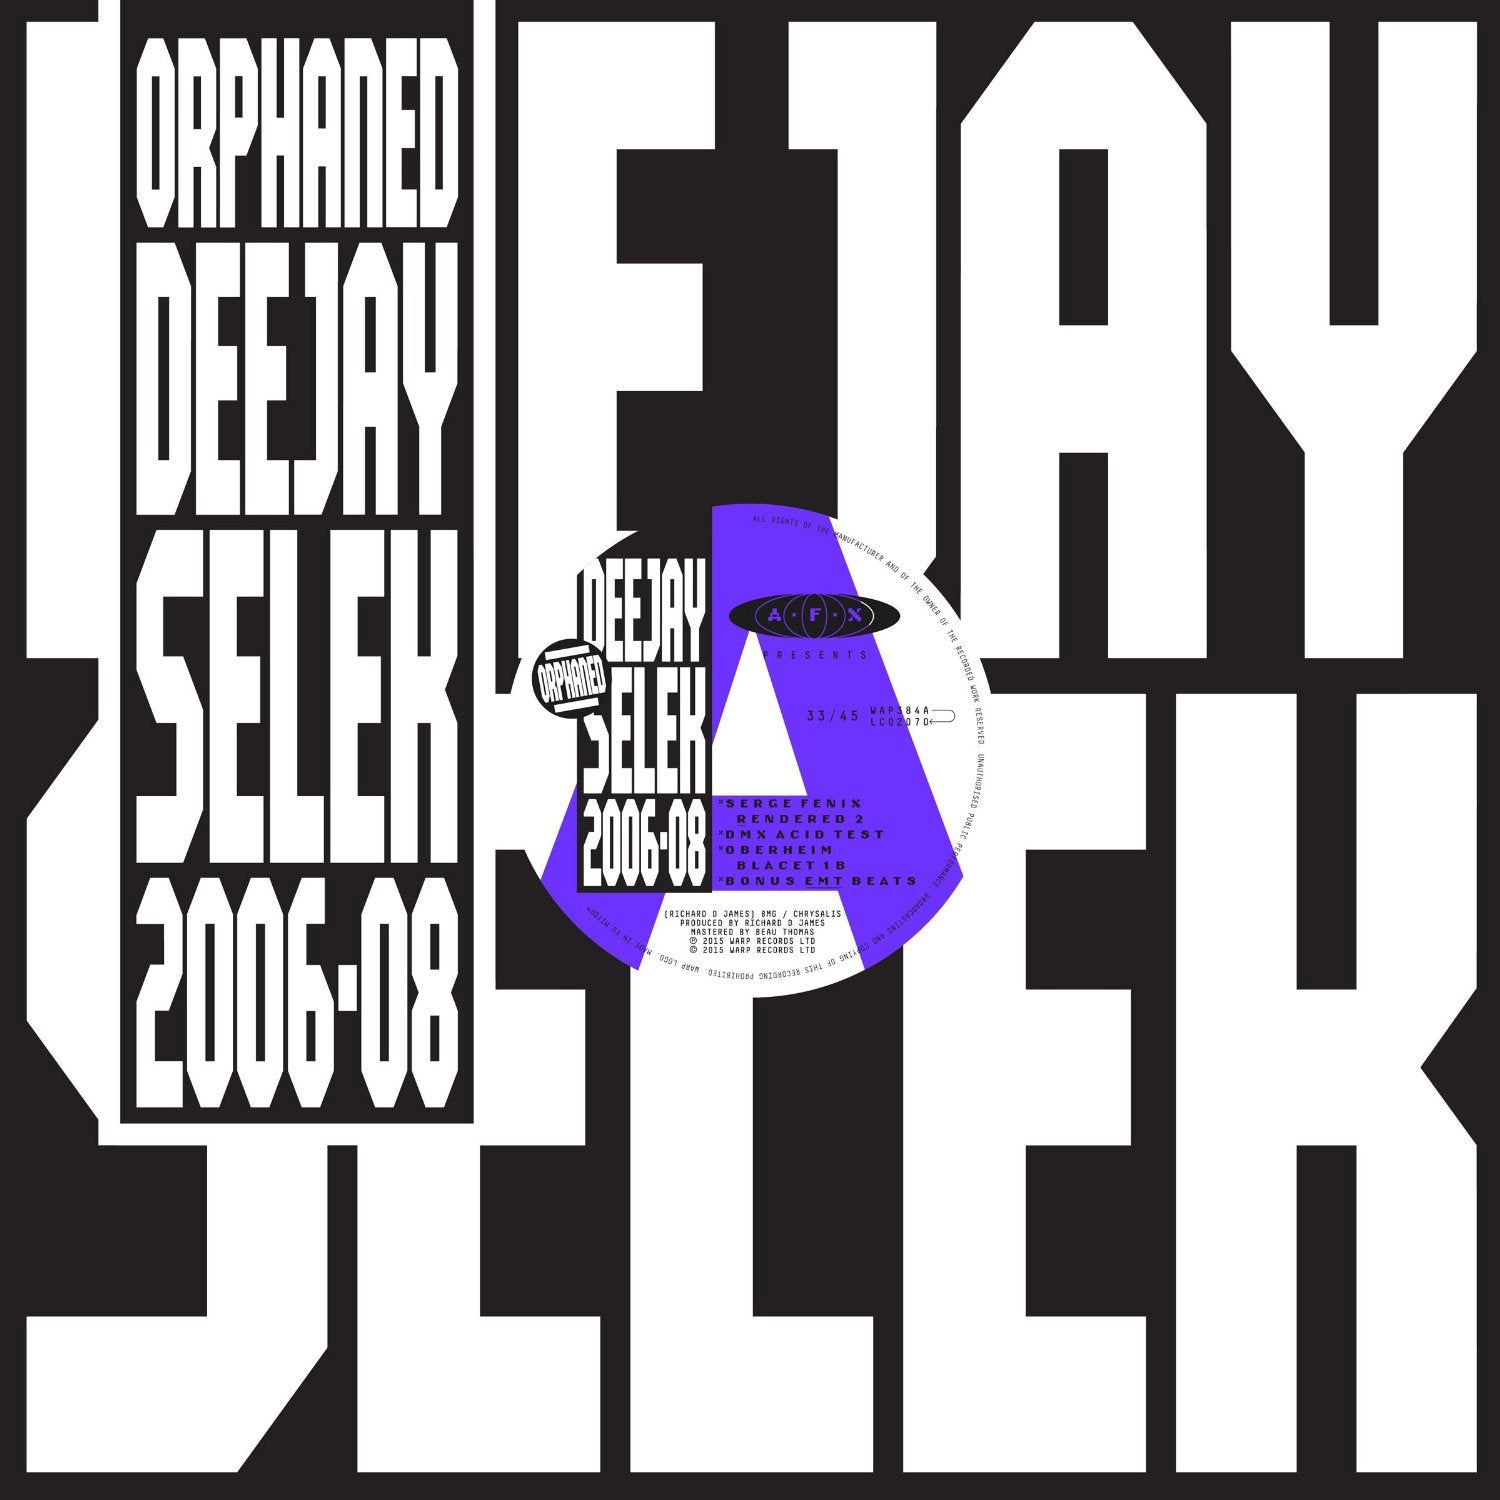 AFX (A.K.A. APHEX TWIN) - Orphaned Deejay Selek 2006 - 2008 - 12" - Vinyl